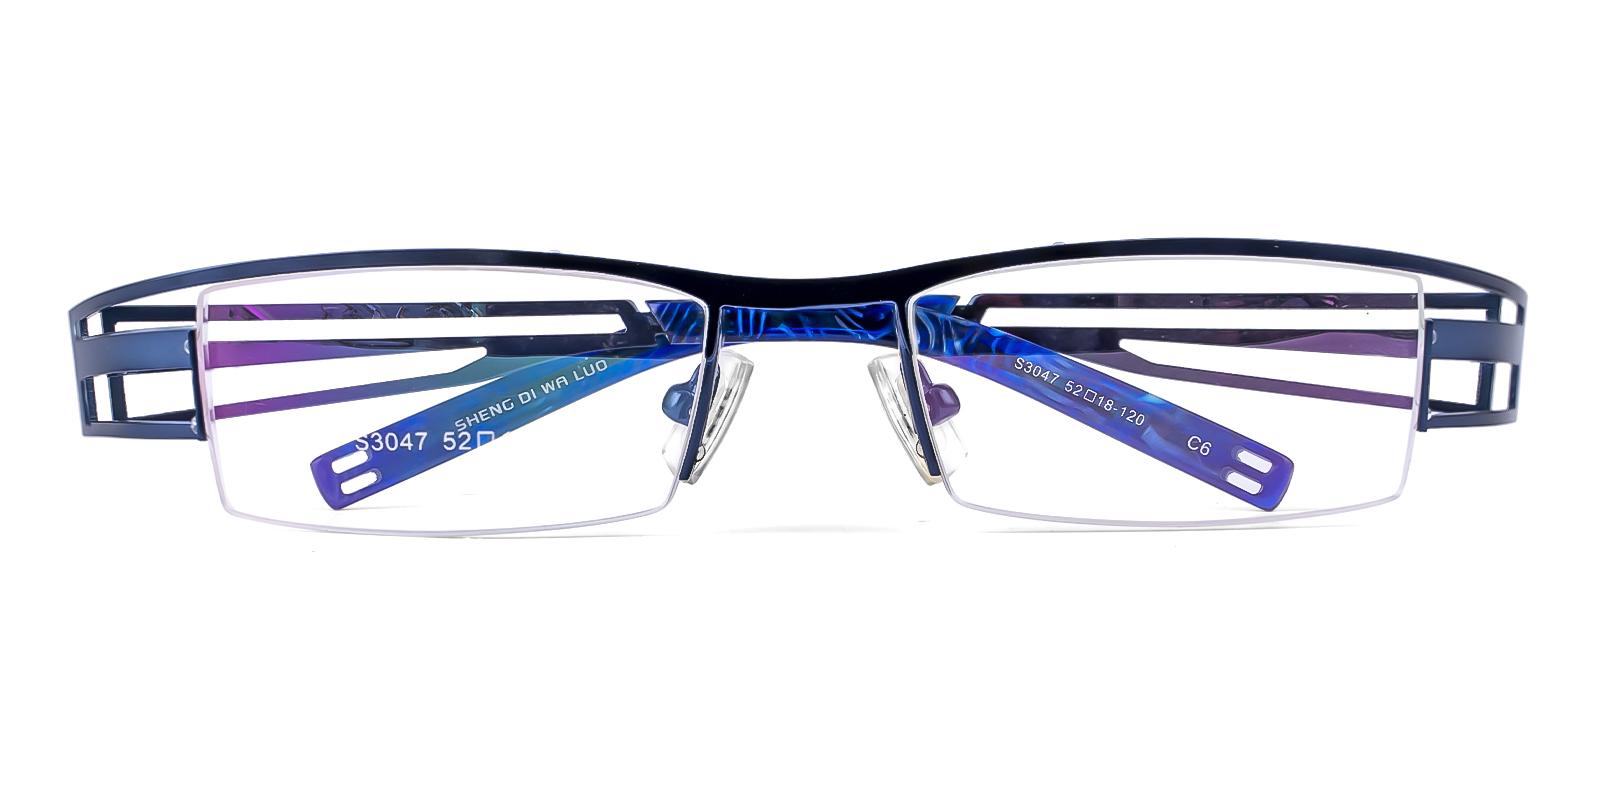 Artics Blue Metal Eyeglasses , NosePads , SportsGlasses Frames from ABBE Glasses